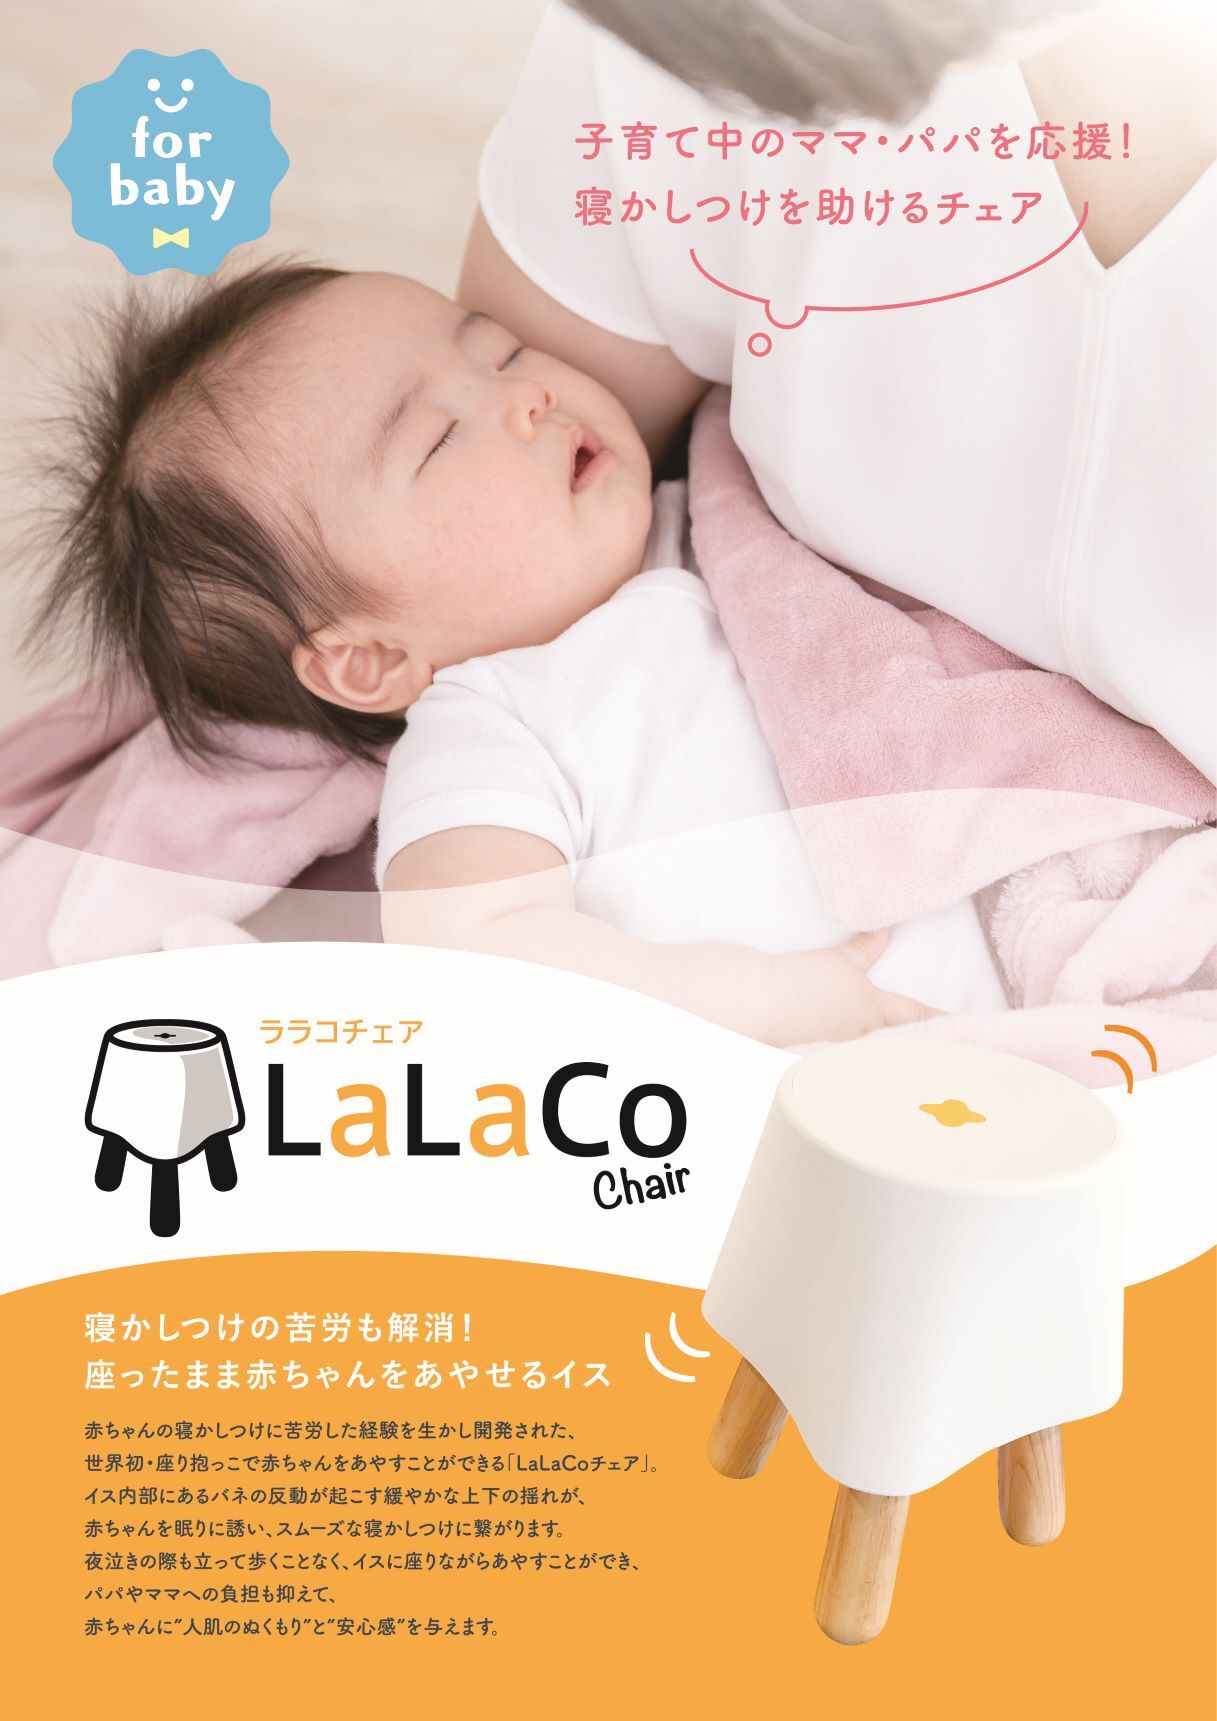 LaLaCoララコチェア LaLaCoチェア 赤ちゃんの寝かしつけ - その他